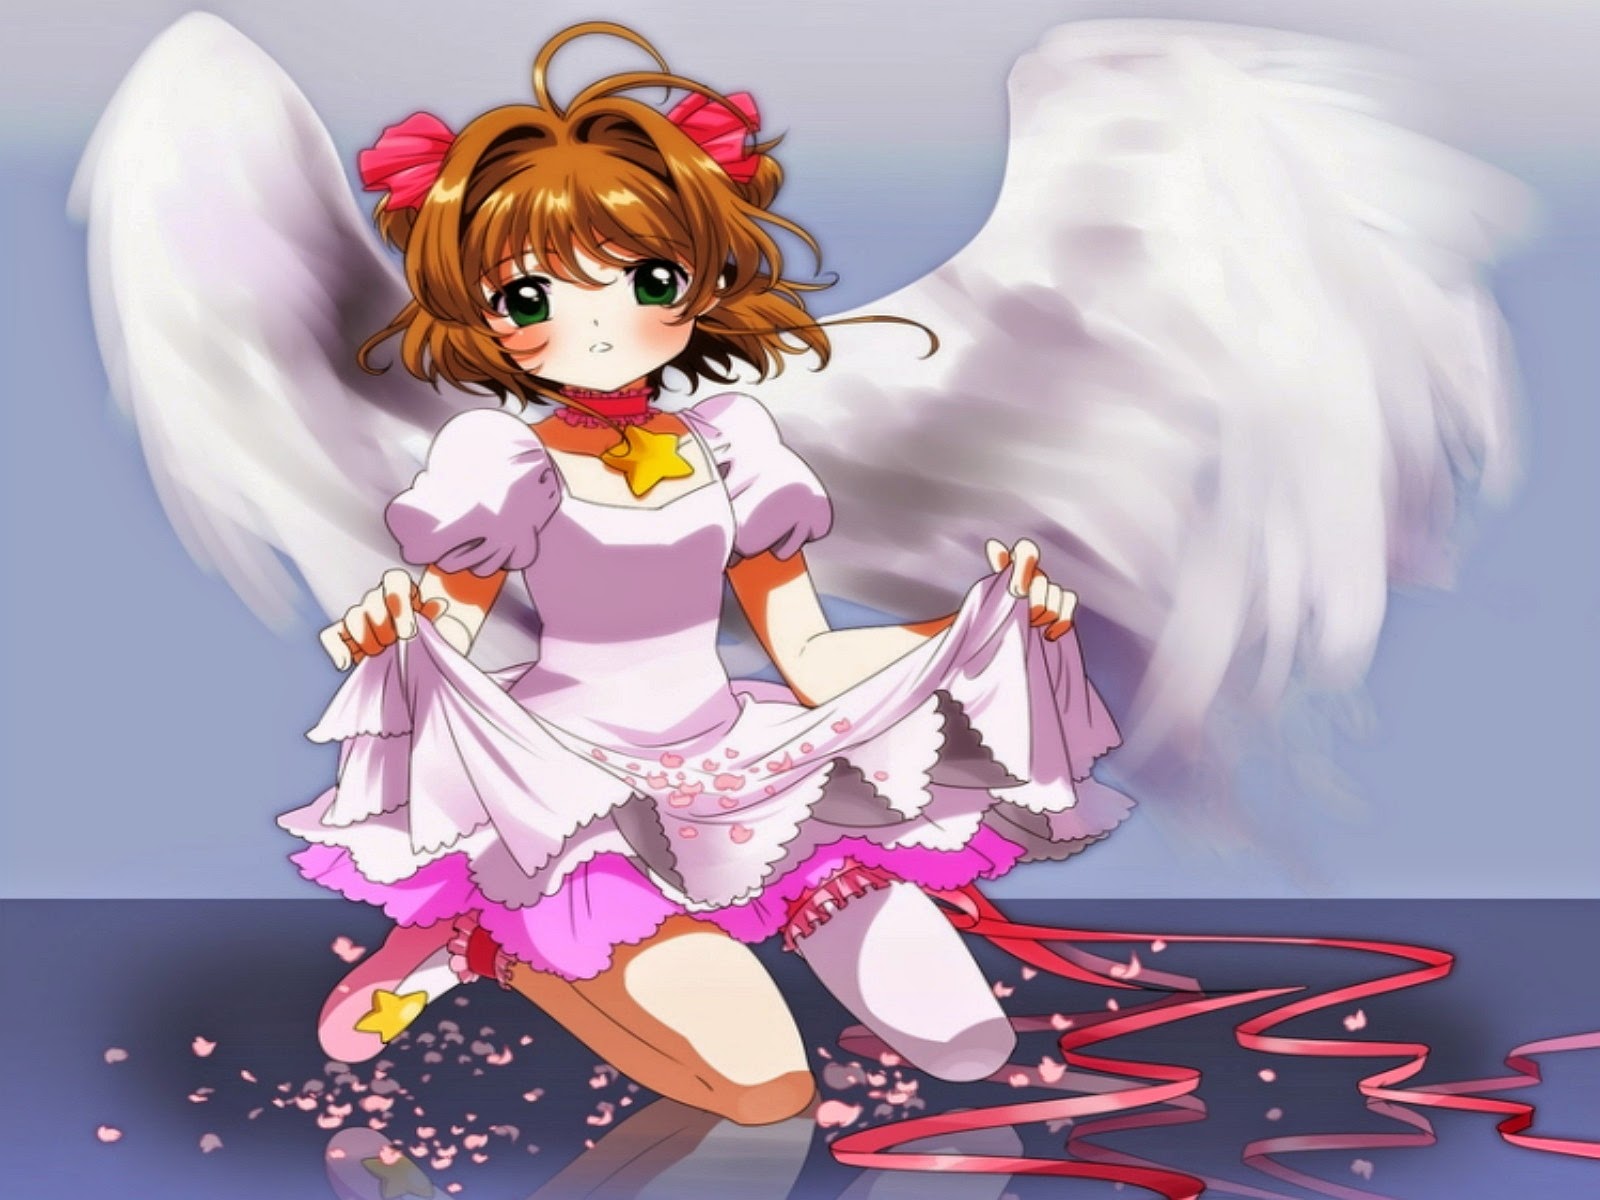 wallpaper malaikat bersayap,cartoon,anime,angel,fictional character,cg artwork